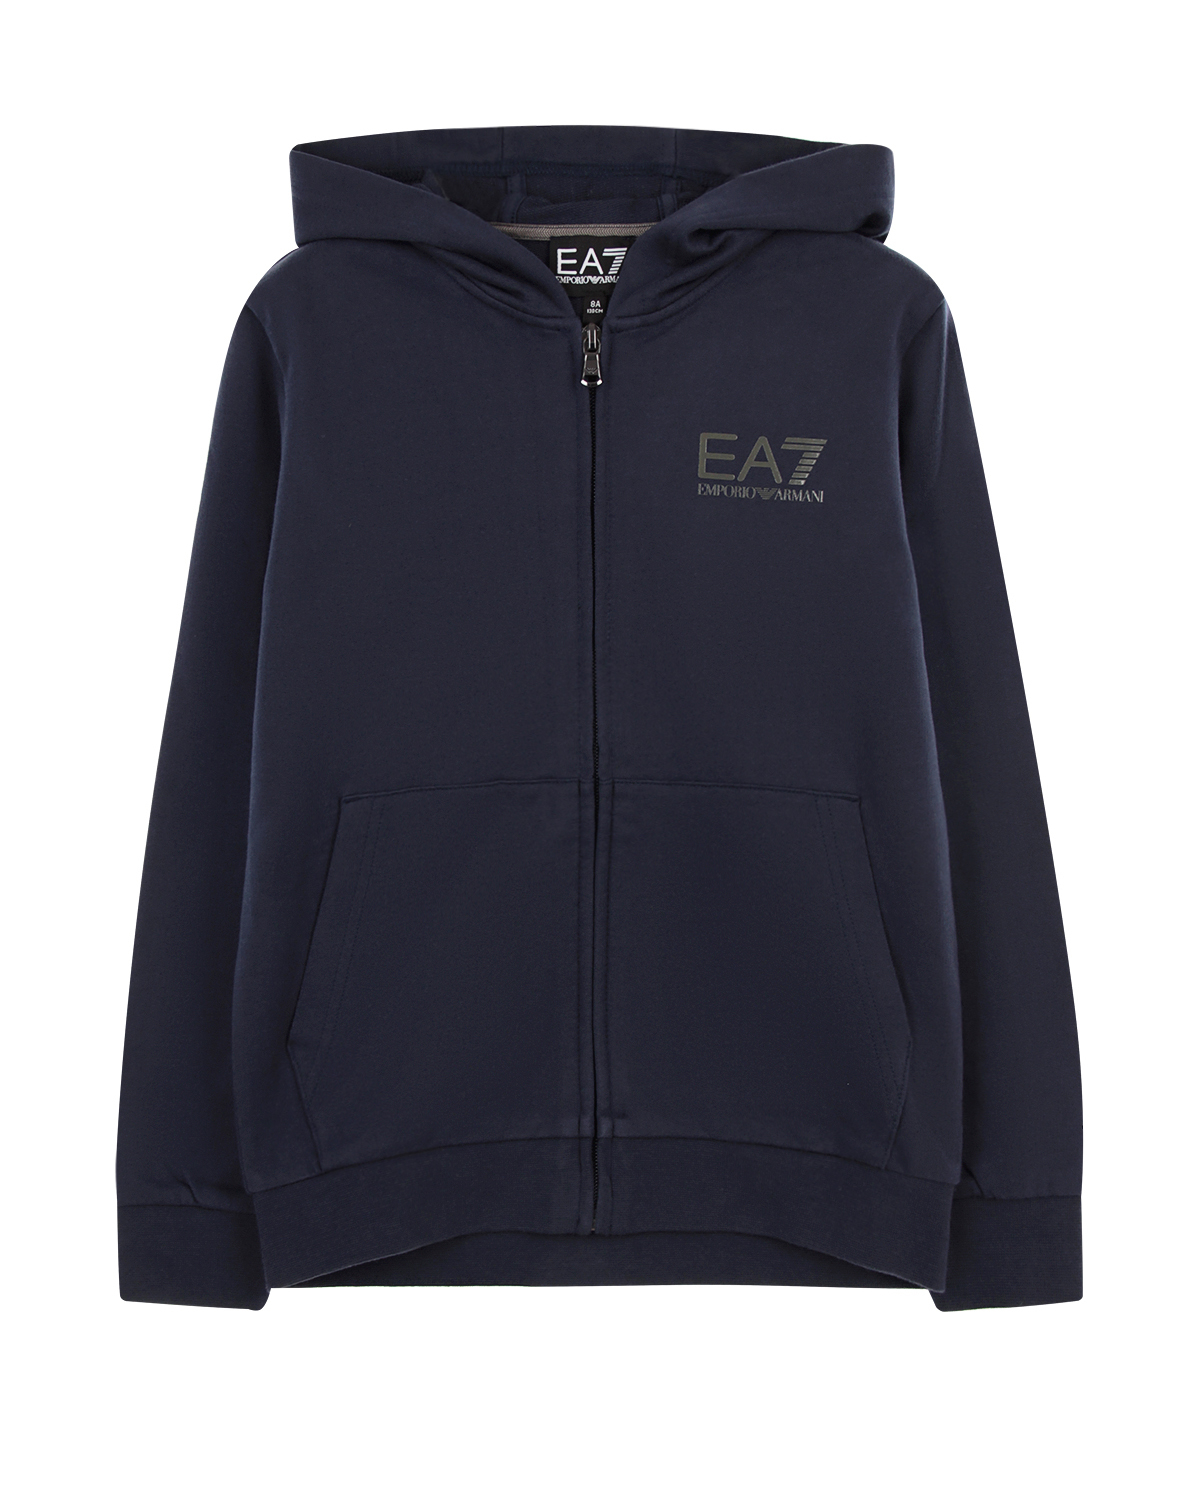 Где купить Куртка спортивная EA7 детская EA7 Emporio Armani 